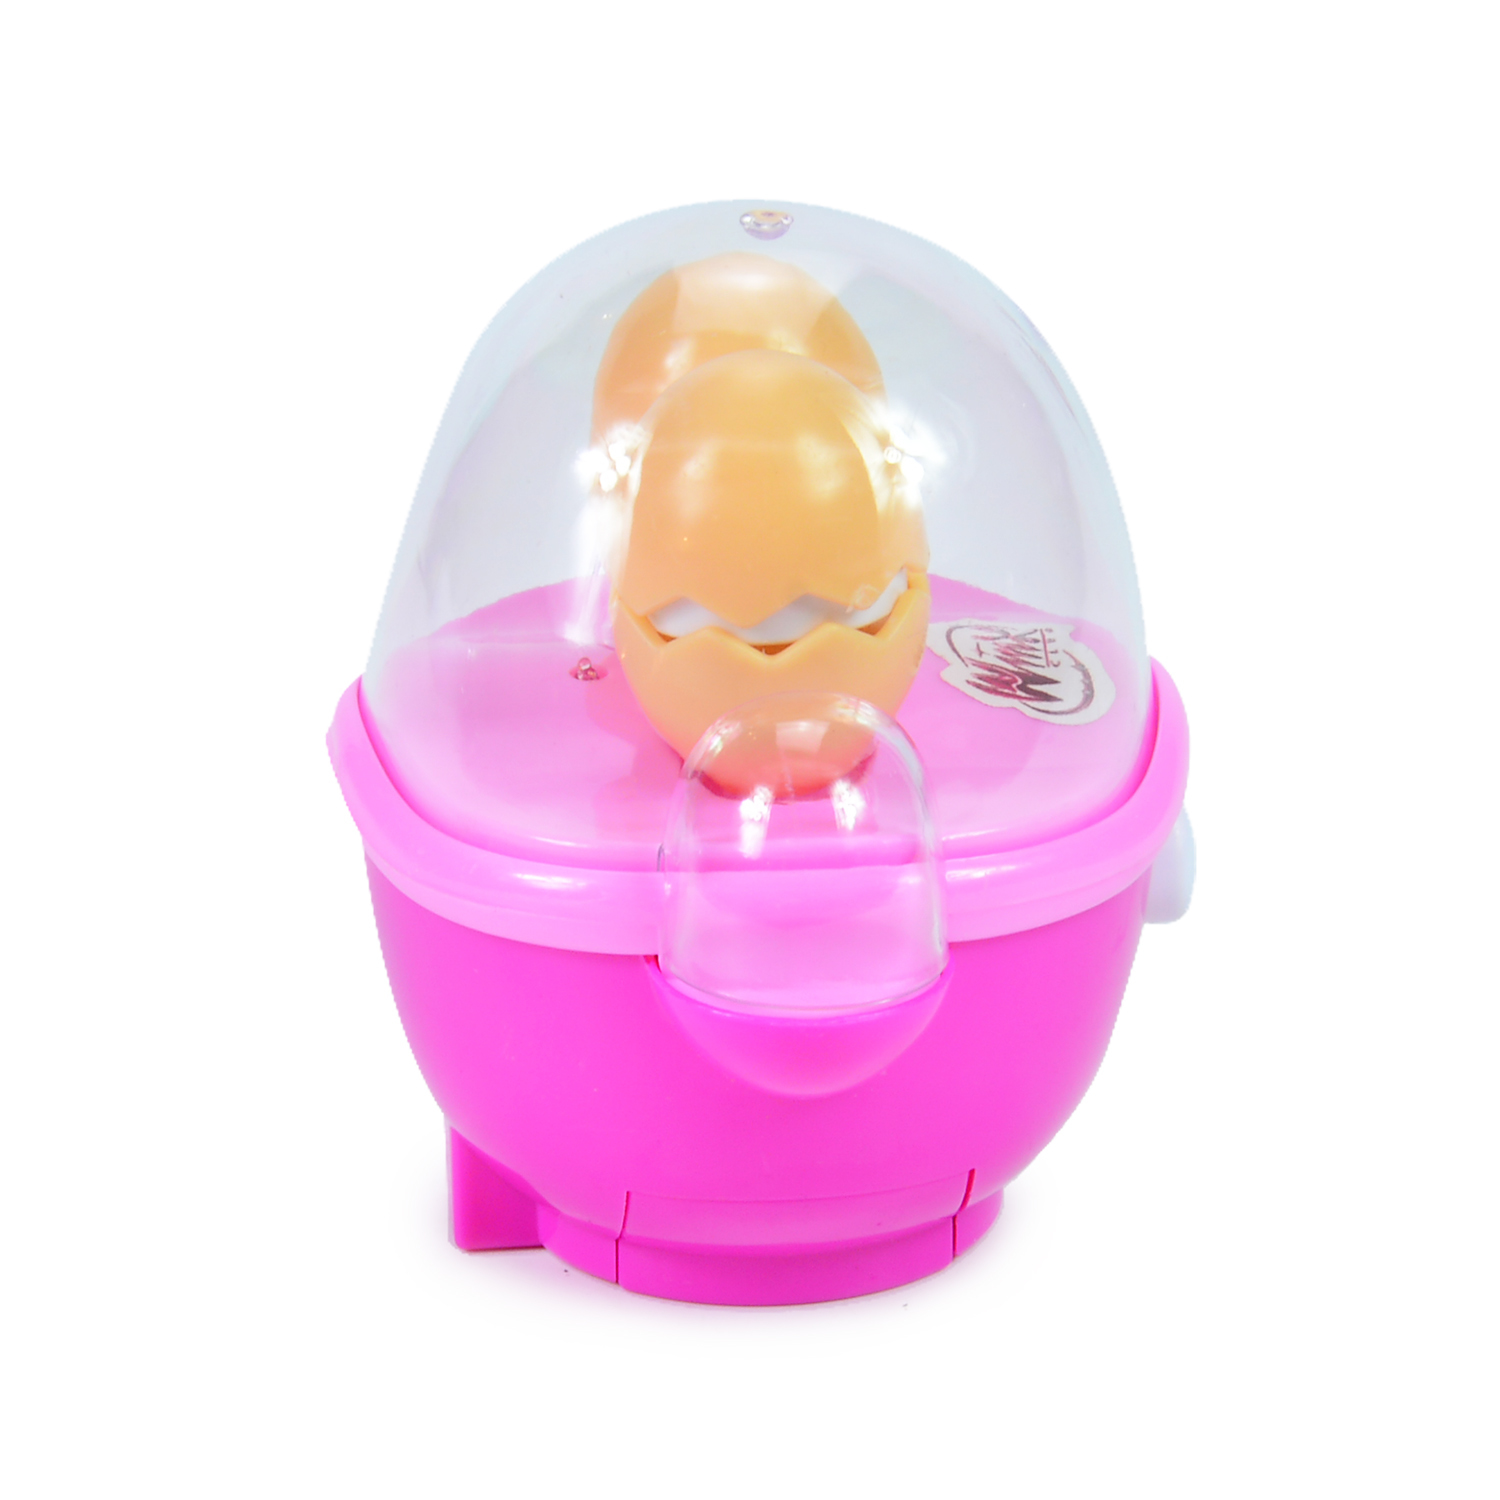 Яйцеварка Winx игровая со светом - фото 3